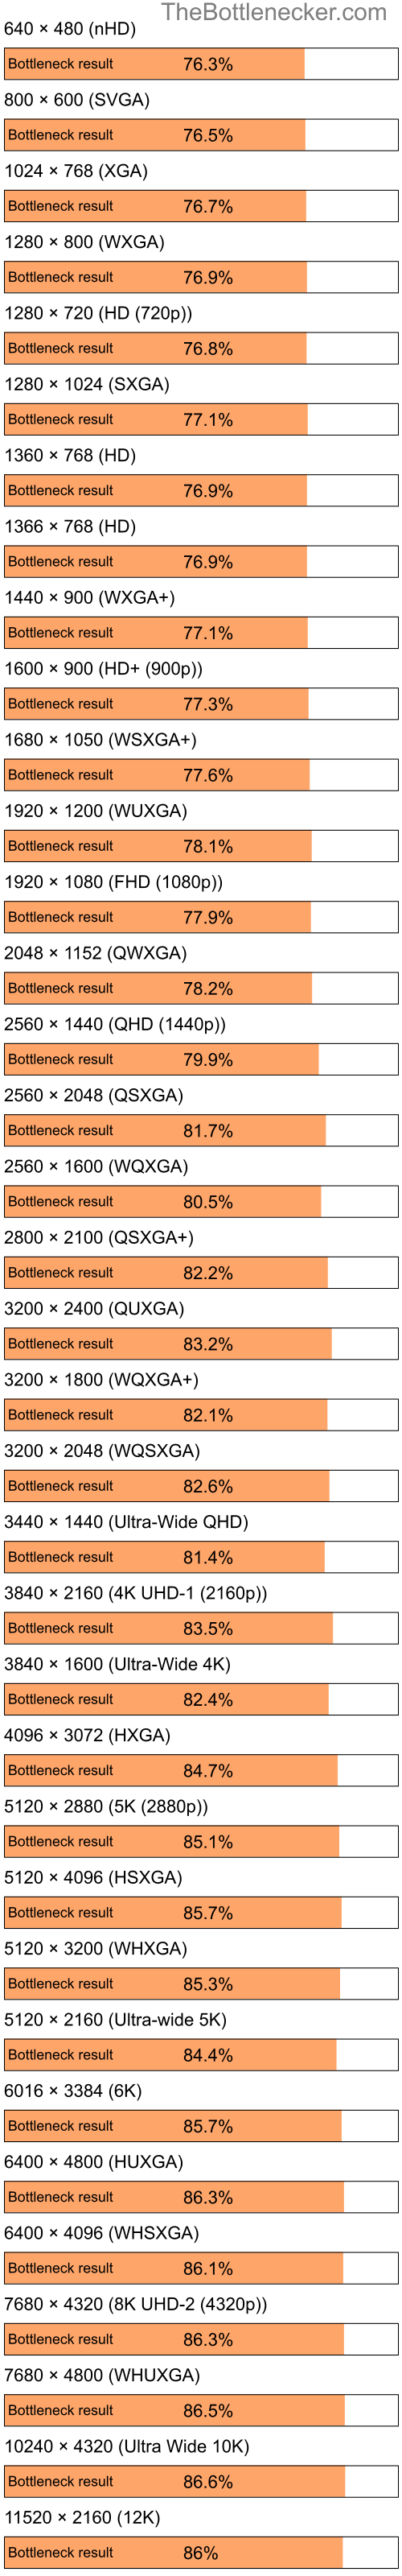 Bottleneck results by resolution for Intel Celeron and NVIDIA GeForce 7050 in General Tasks